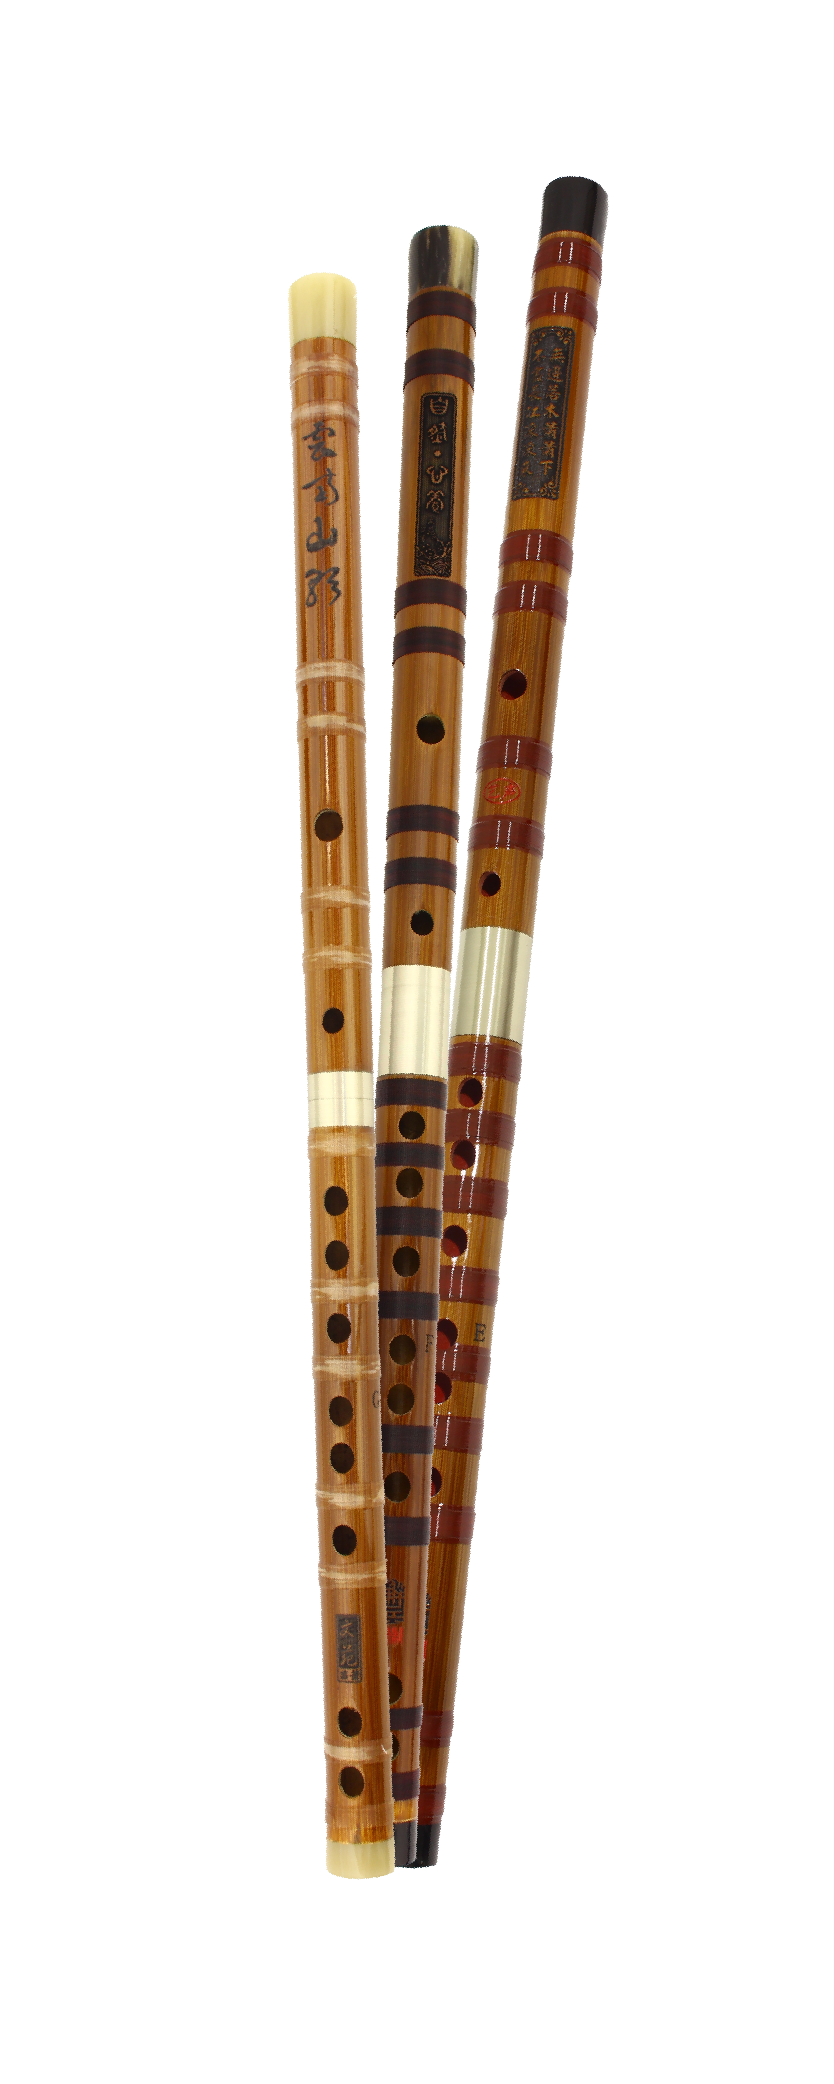 Woodwind Flutes Professional Musical Instruments Chinese Dizi Transversal Flauta 